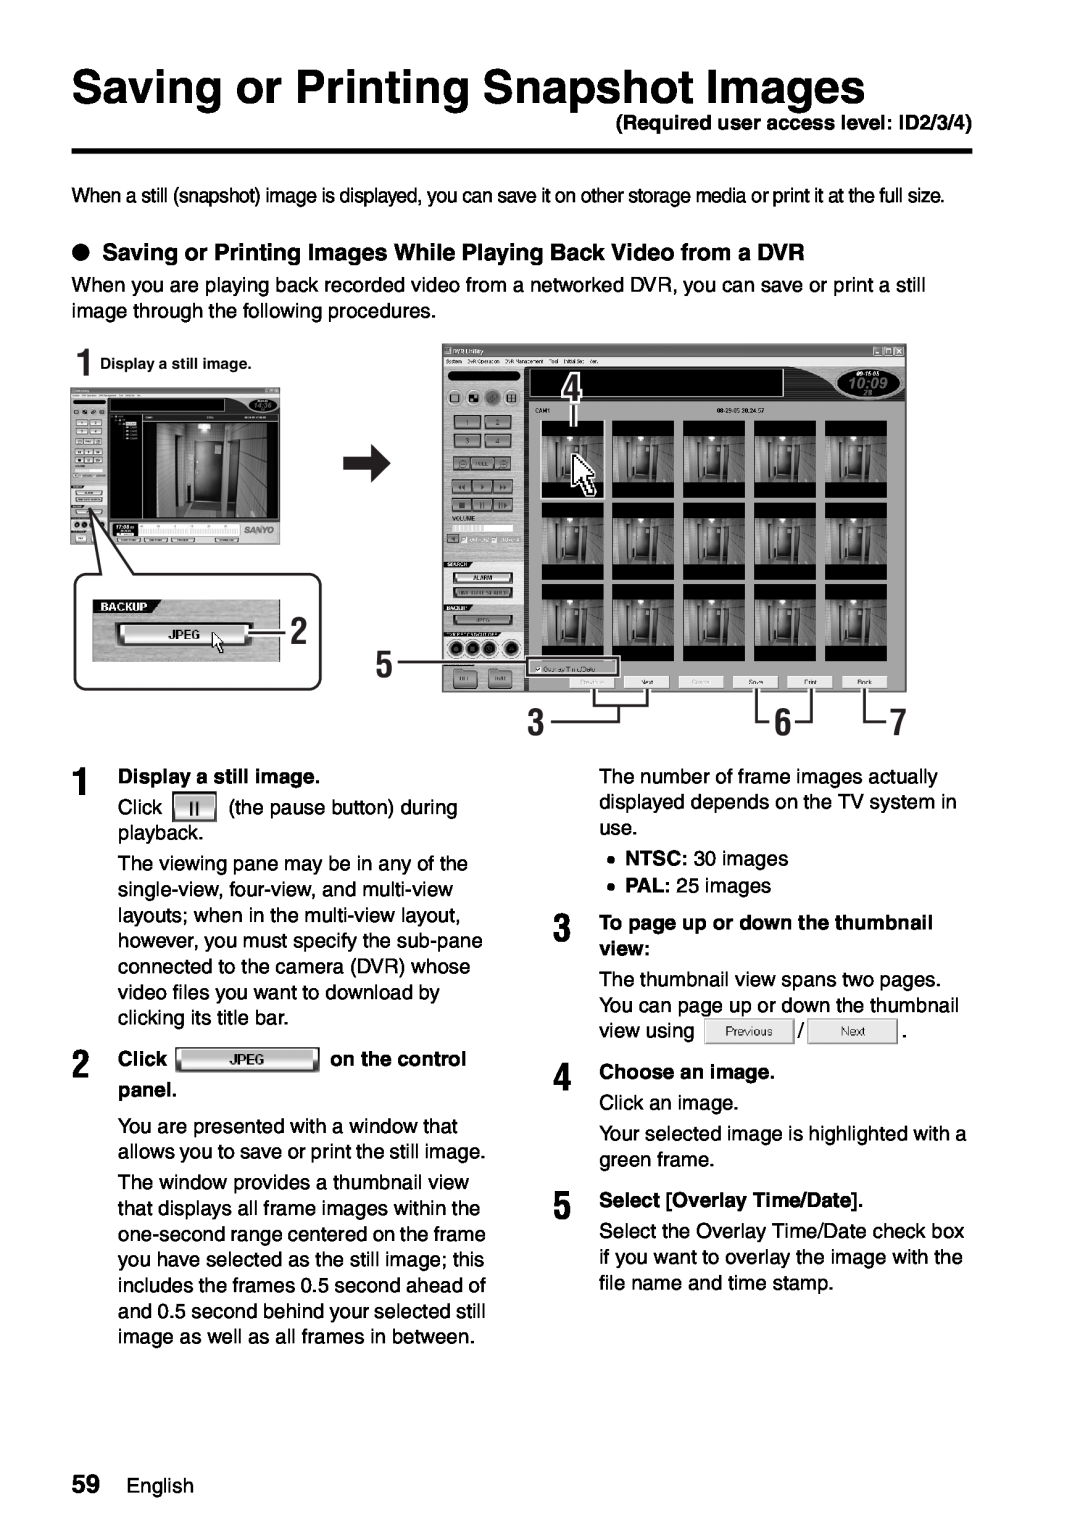 Sanyo VA-SW8000 Saving or Printing Snapshot Images, Display a still image, view, Choose an image. Click an image 